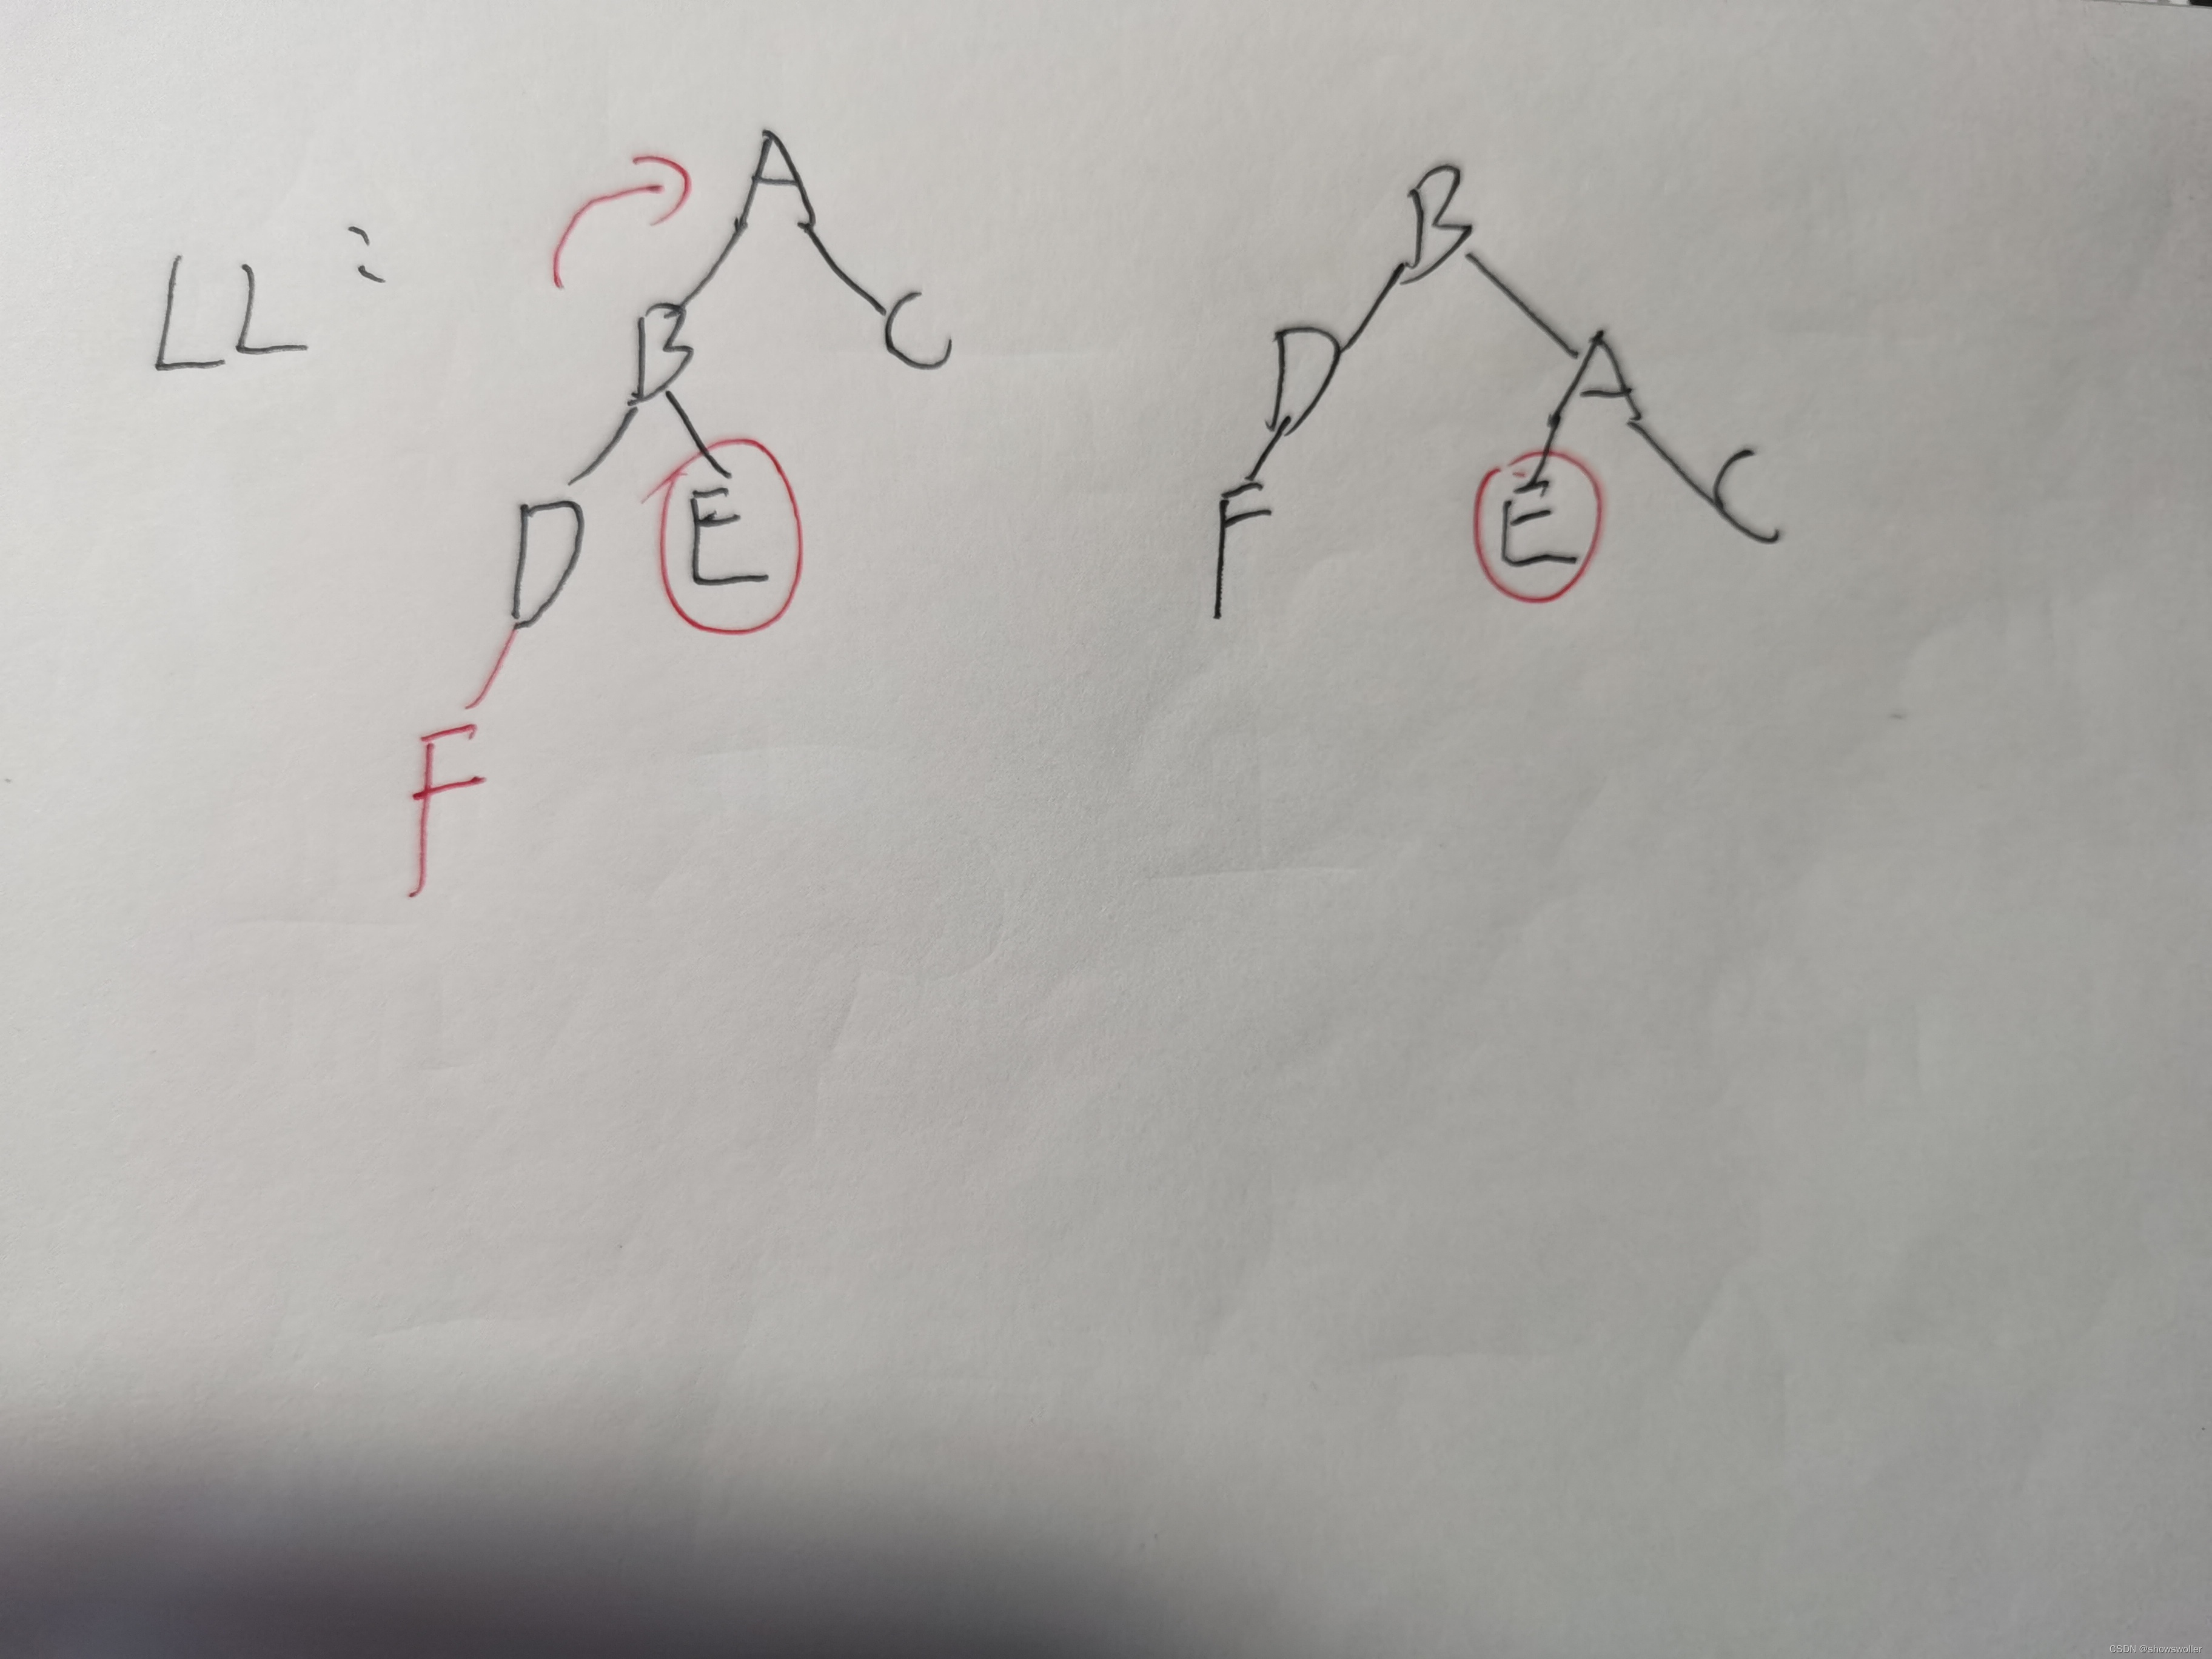 数据结构中平衡二叉树插入删除中左旋、右旋、左右双旋、右左双旋的详解（题目讲解 简单易懂）